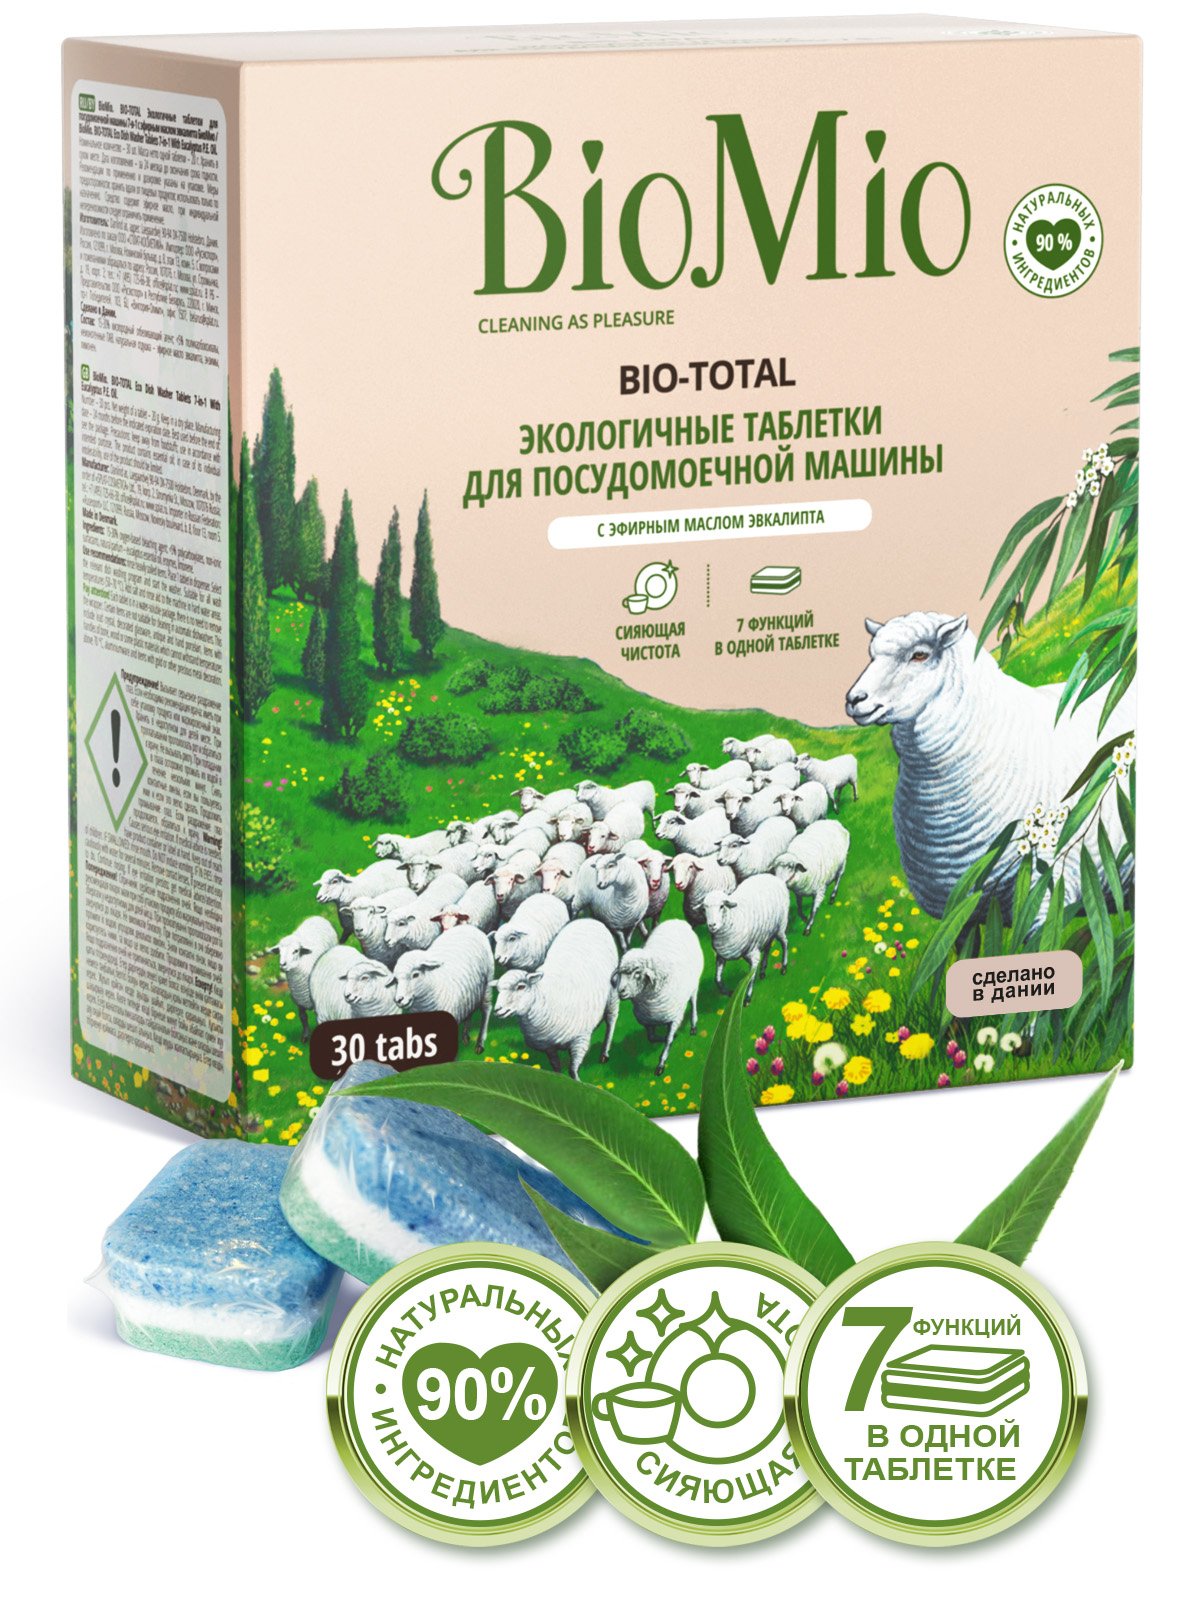 Таблетки для миття посуду в посудомийних машинах BioMio Bio-Total 7 в 1 з маслом евкаліпта, 30 шт. - фото 2